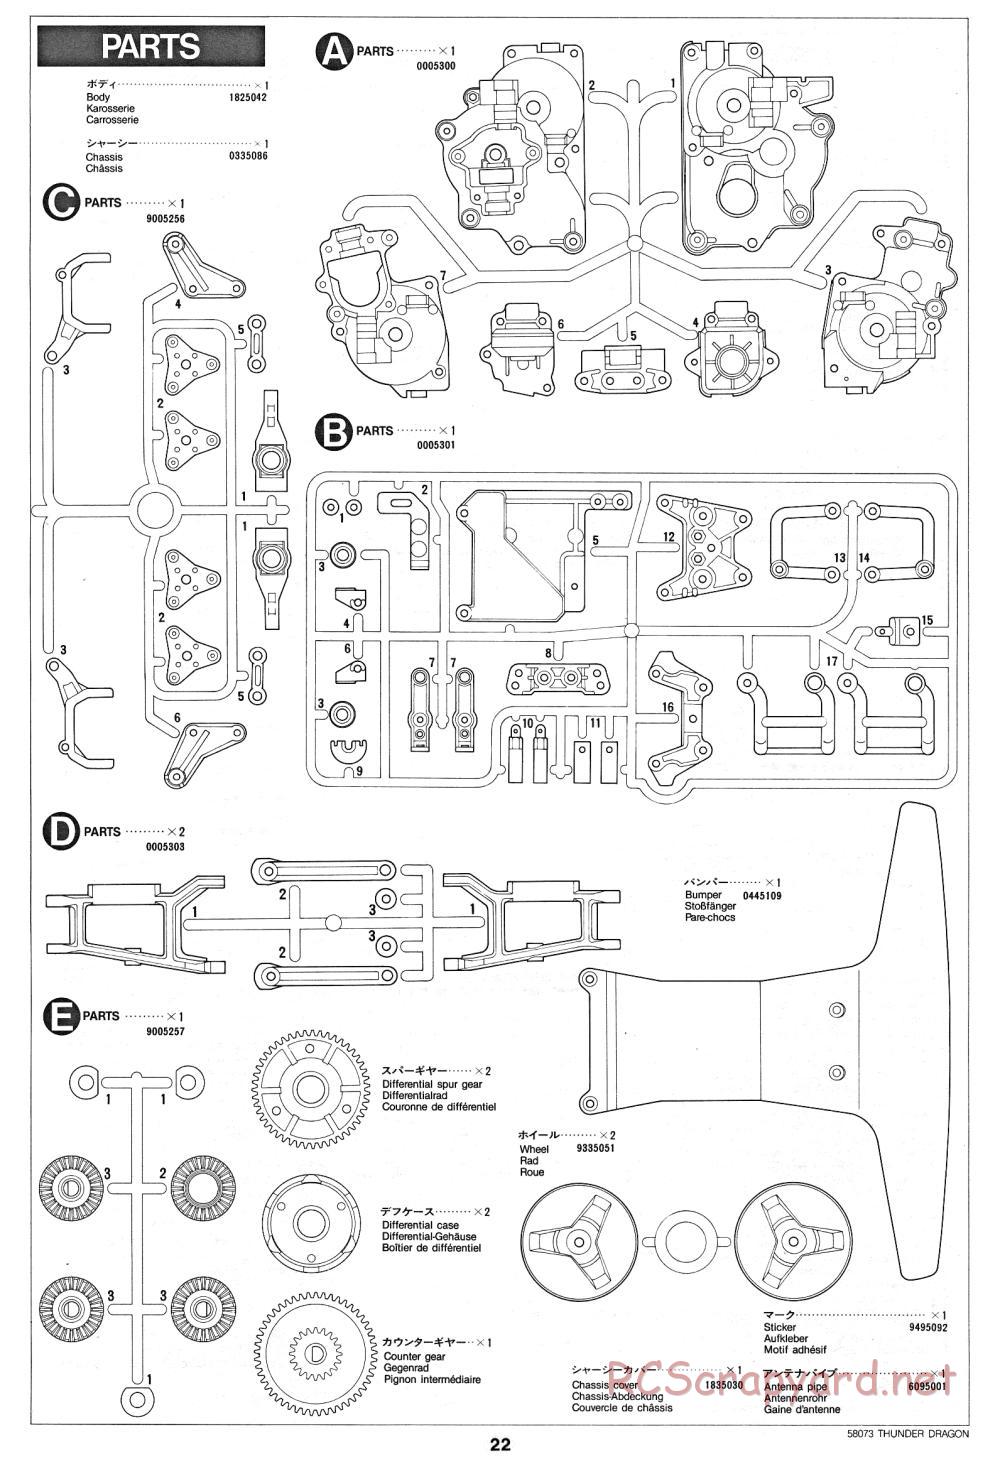 Tamiya - Thunder Dragon - 58073 - Manual - Page 22